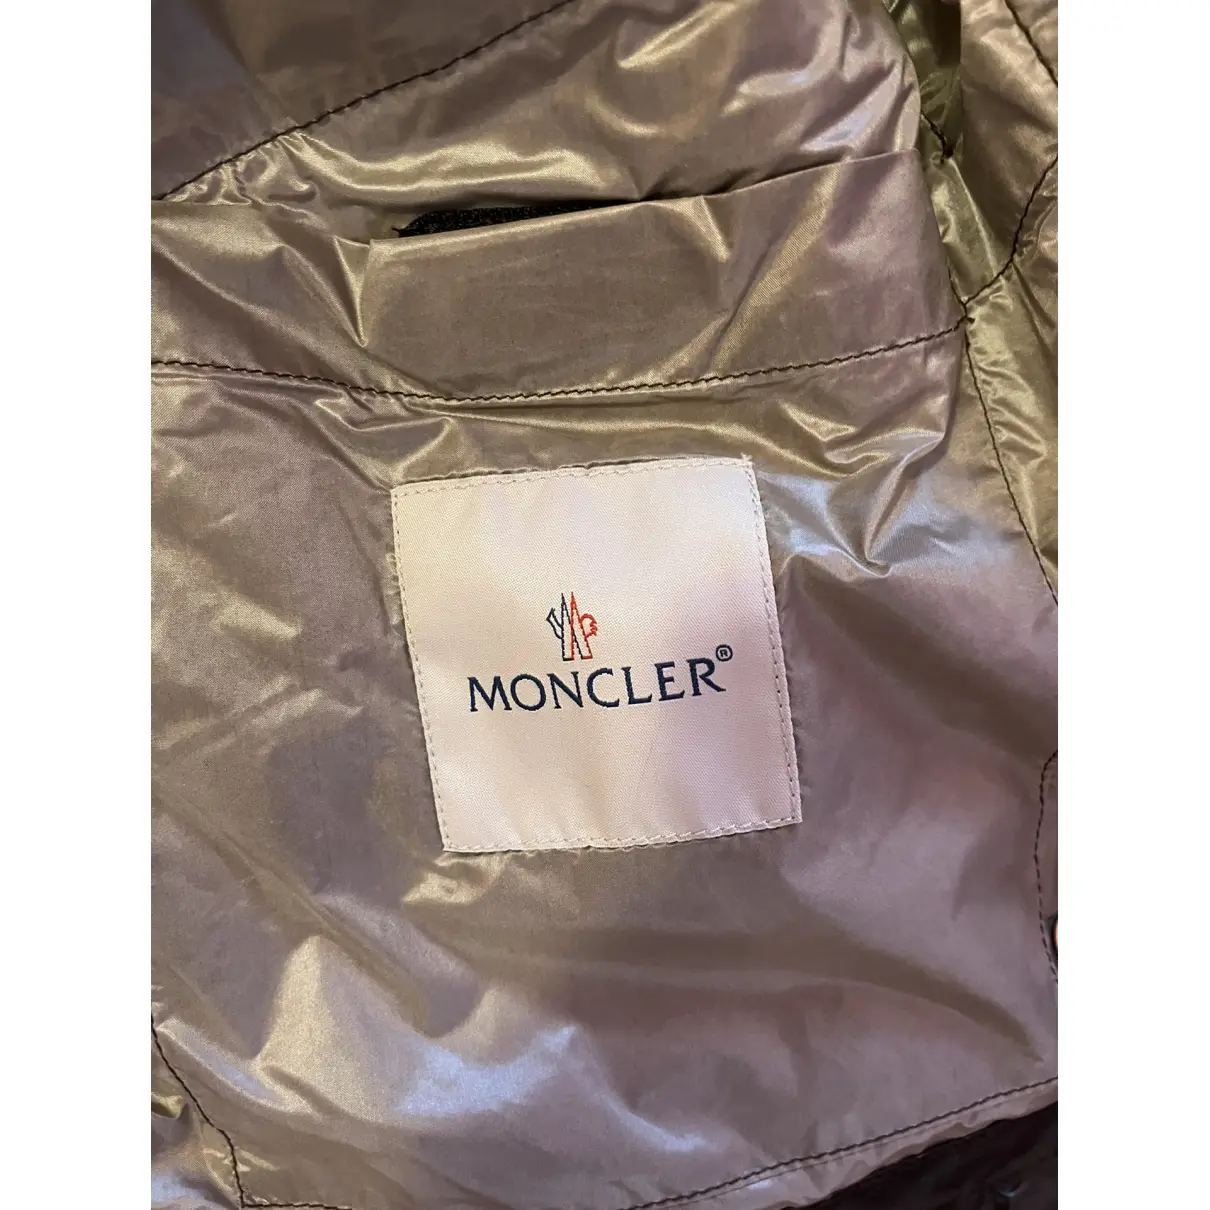 Buy Moncler Trenchcoat online